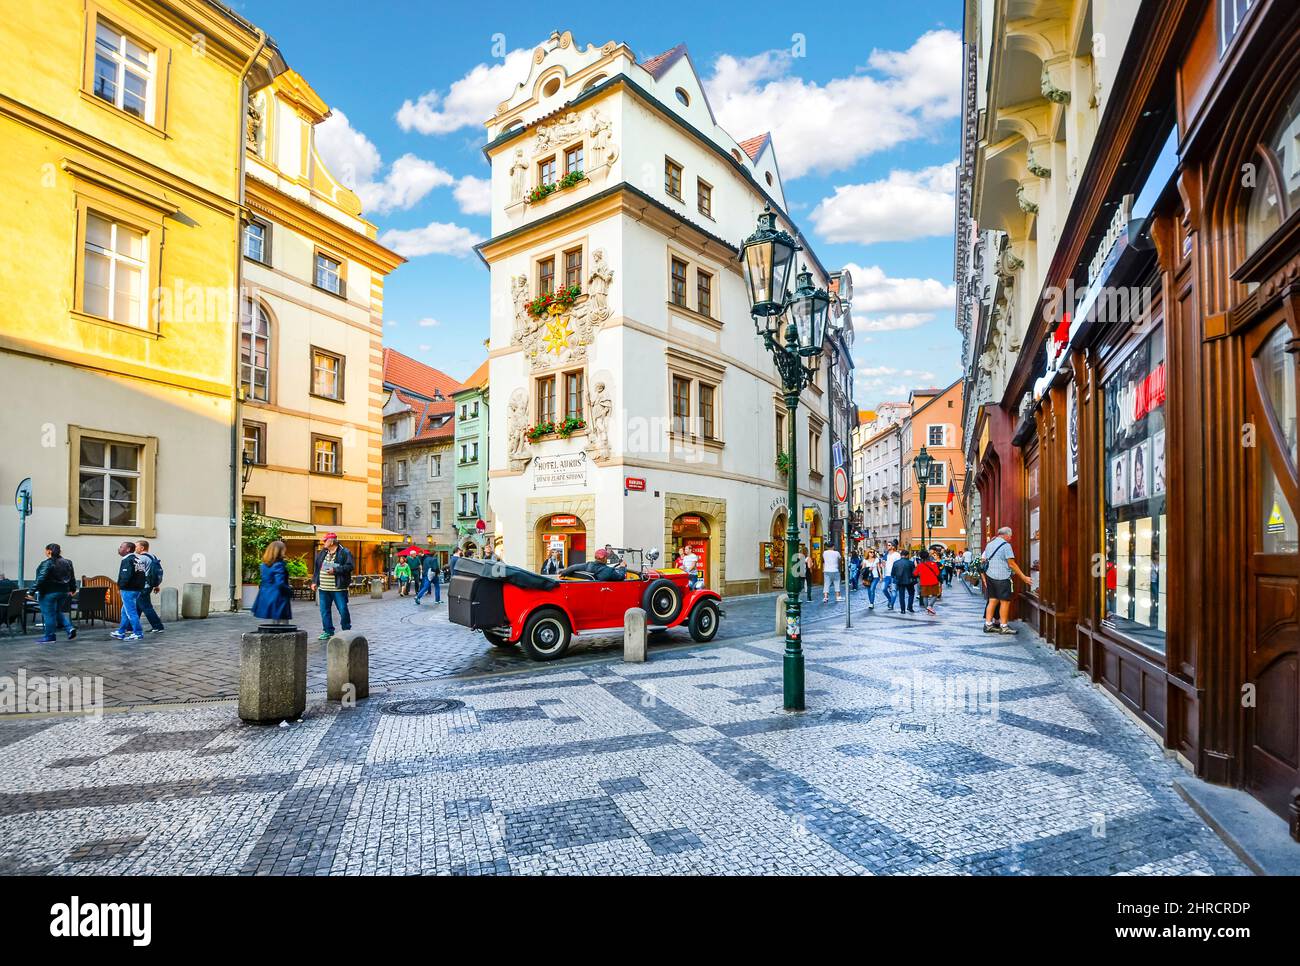 Los turistas paseos turísticos, ir de compras y disfrutar de los cafés mientras pasan por un automóvil rojo vintage en una pintoresca sección de la Ciudad Vieja de Praga, República Checa. Foto de stock